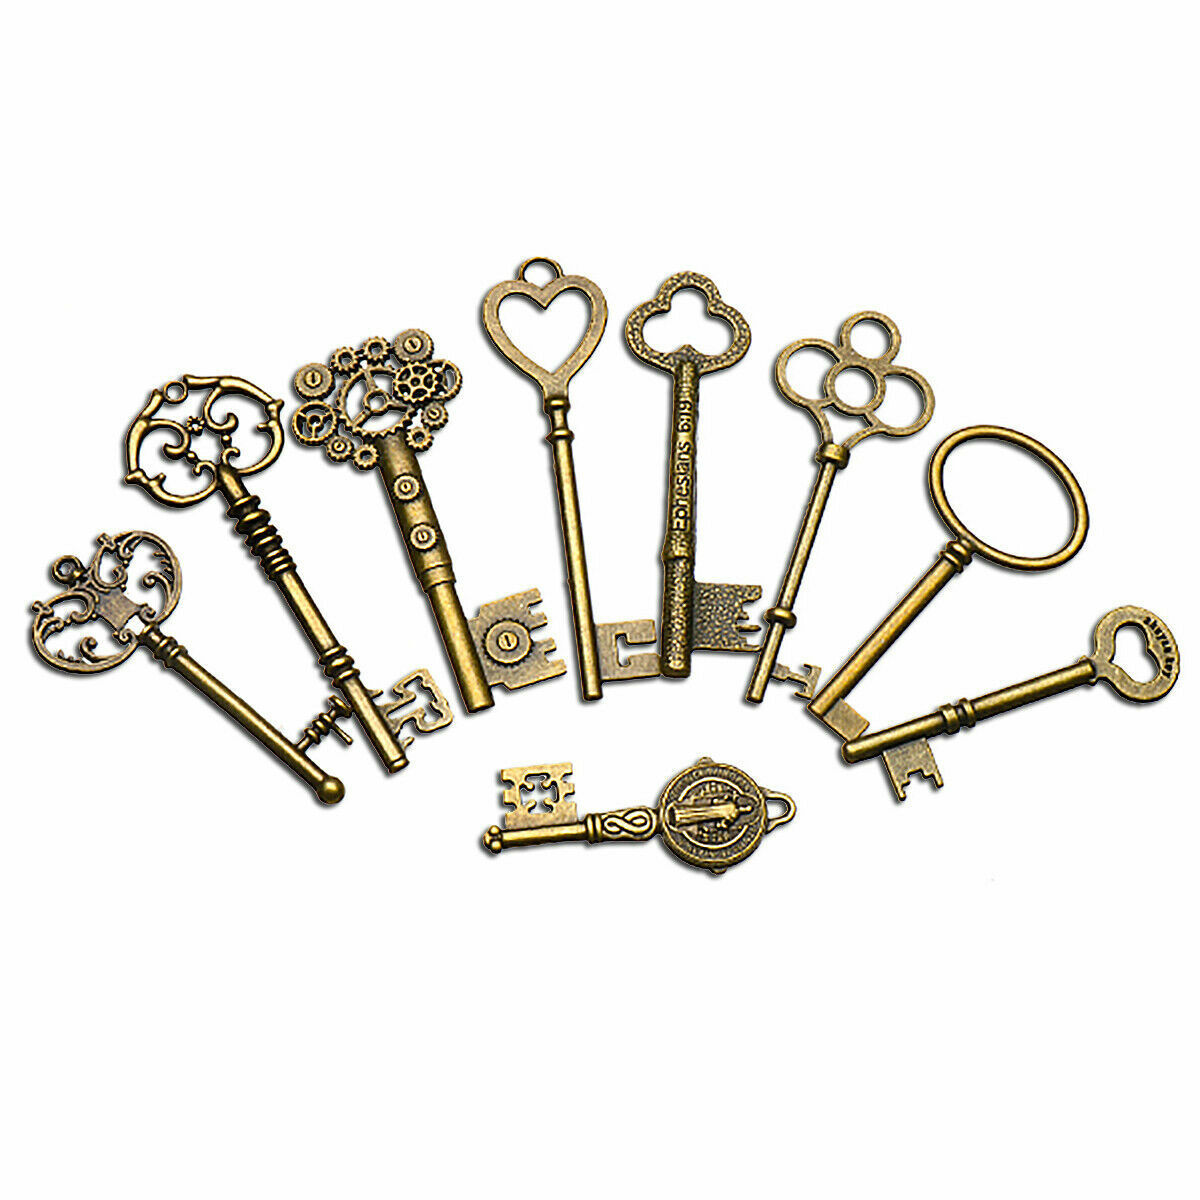 9pcs Vintage Skeleton Keys Charm Set Royal Key in Antique Bronze for Pendant DIY